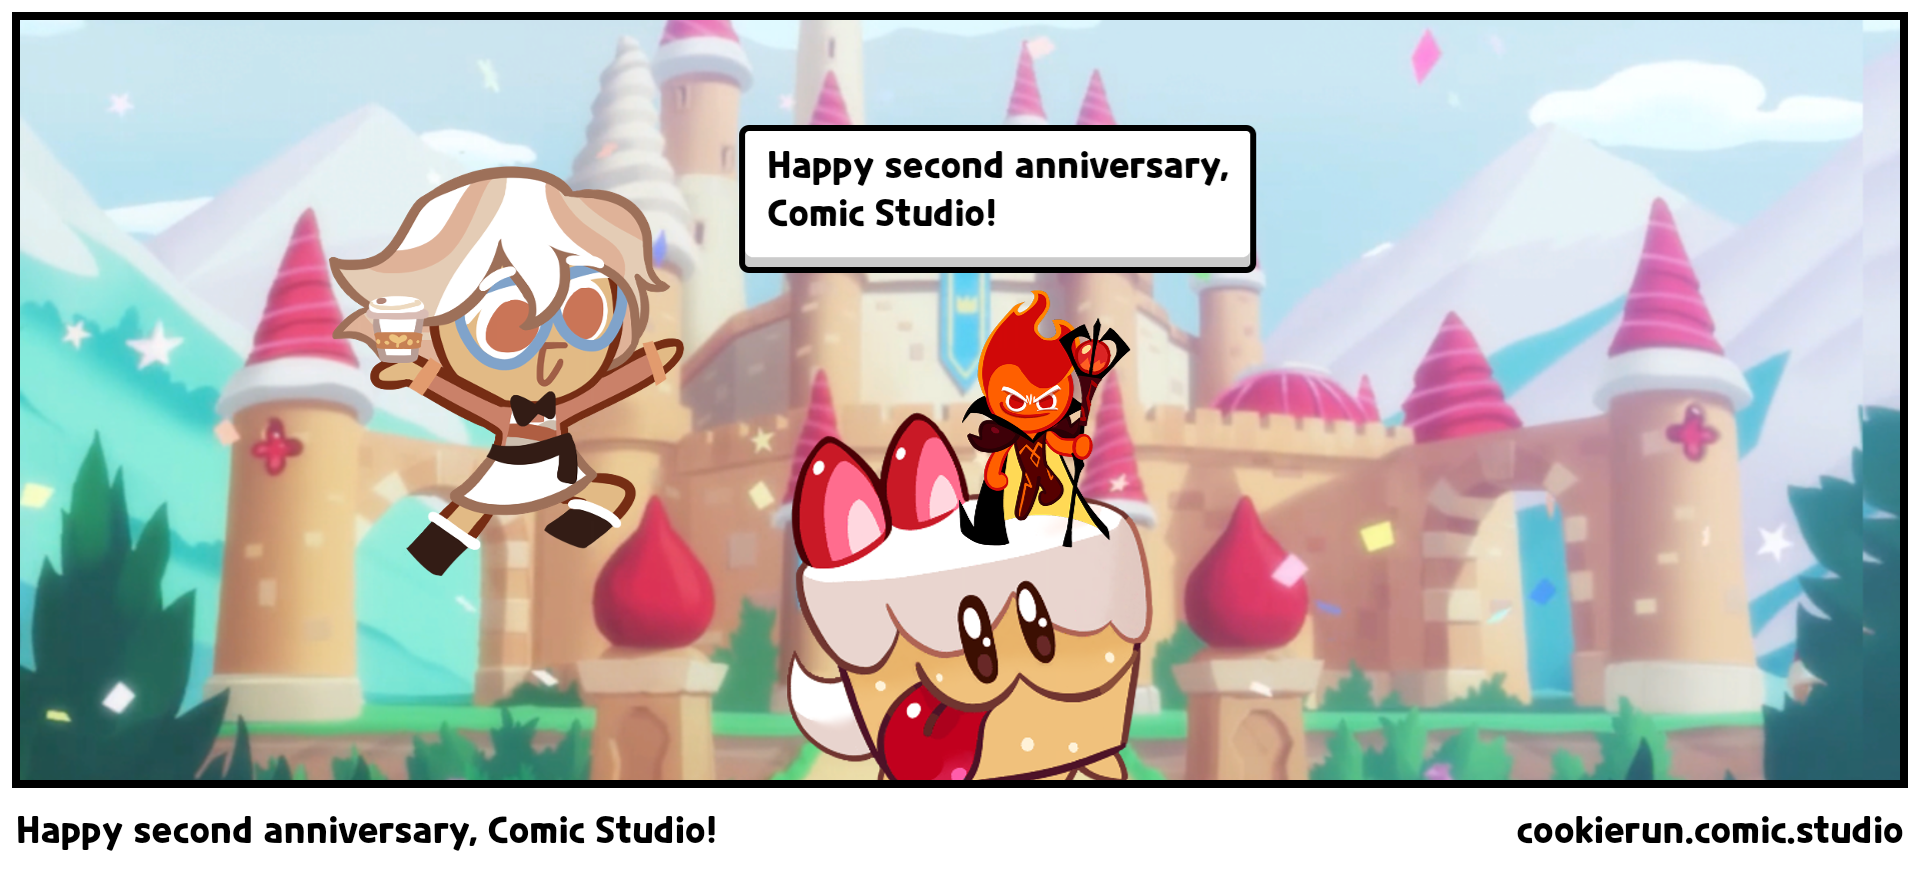 Happy second anniversary, Comic Studio!